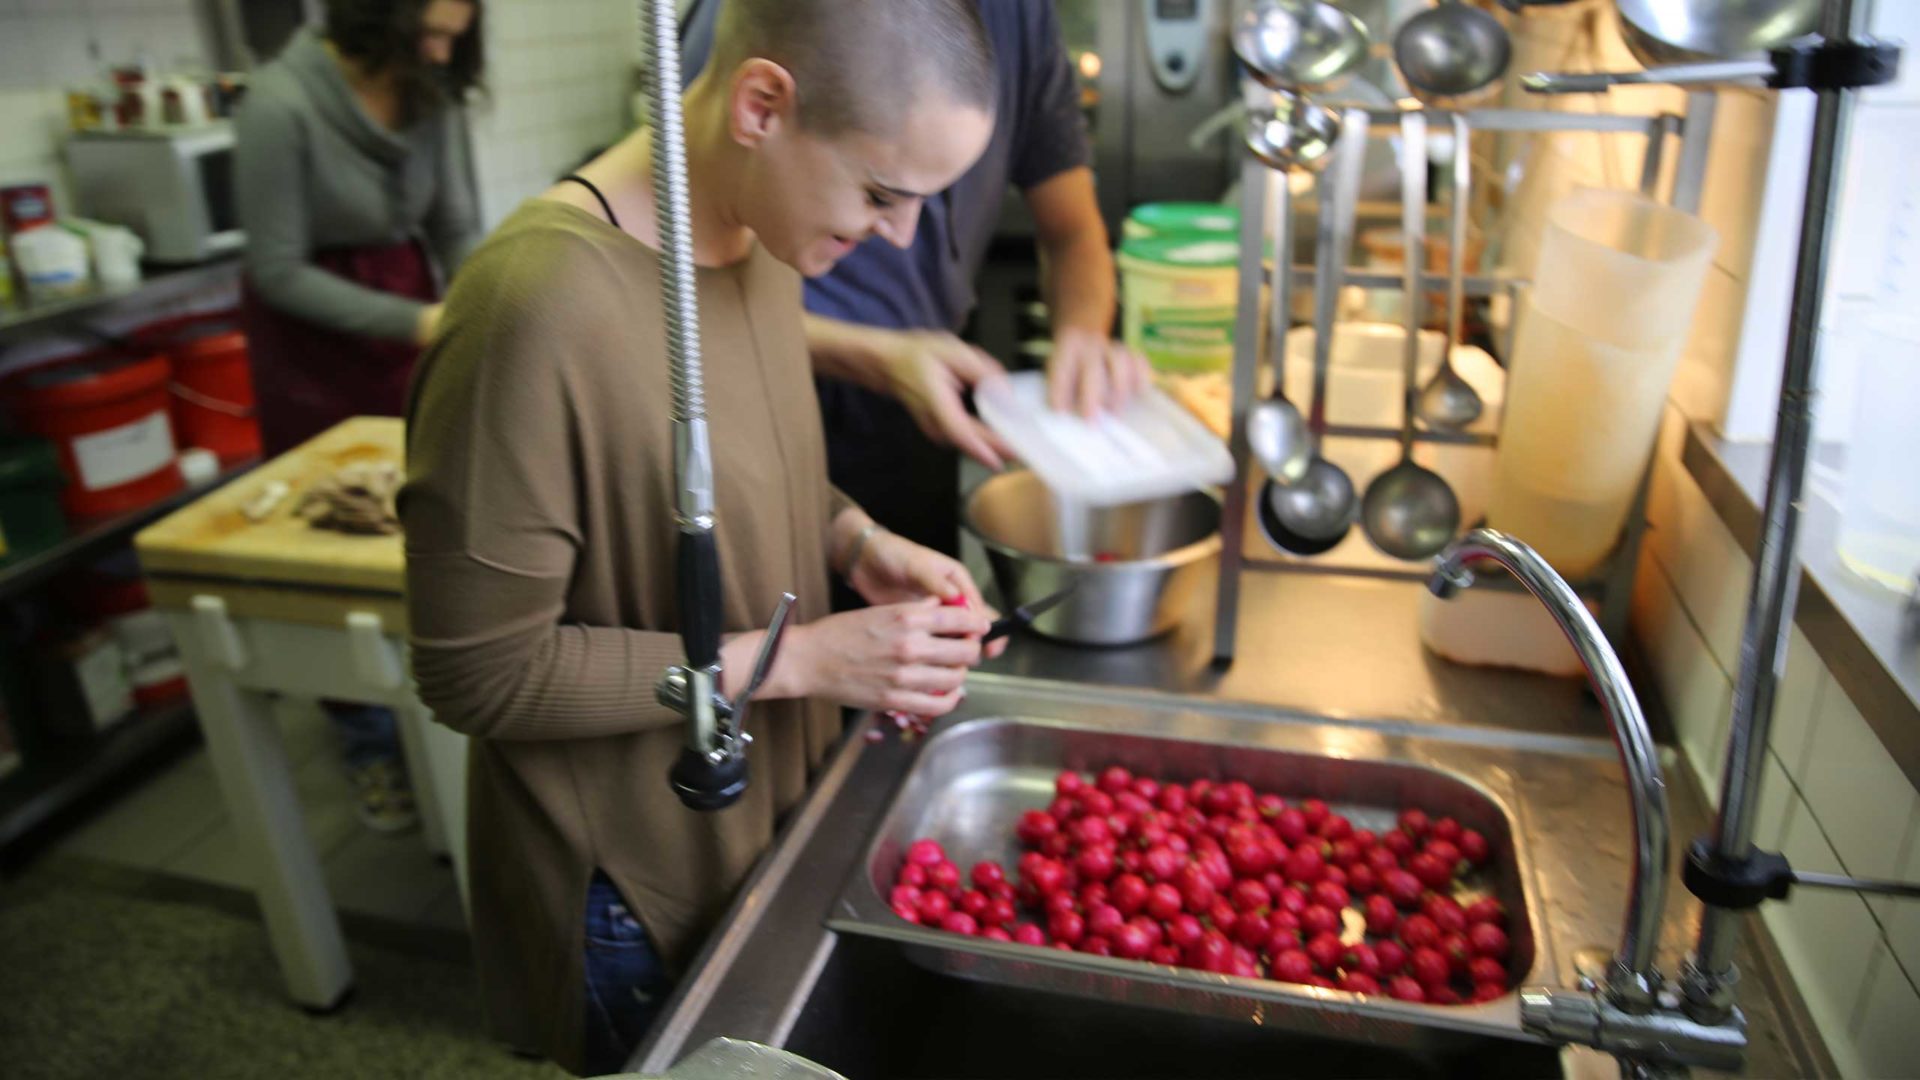 Grie Soß in Griesheim: In der Küche der Arche Frankfurt werden Erdbeeren geschnitten.